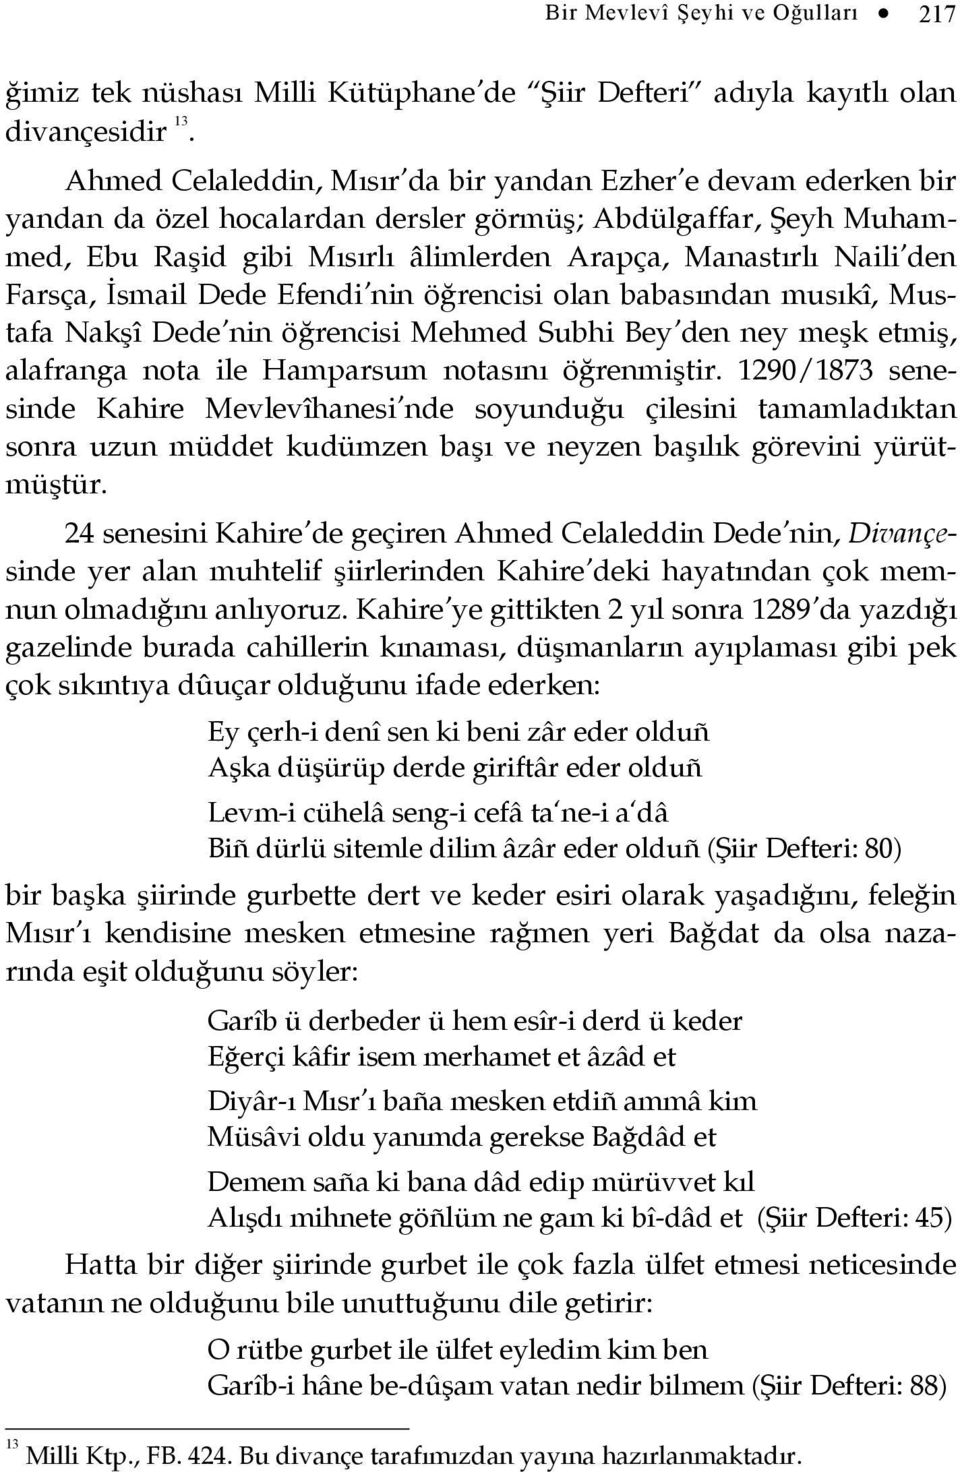 Farsça, İsmail Dede Efendi nin öğrencisi olan babasından musıkî, Mustafa Nakşî Dede nin öğrencisi Mehmed Subhi Bey den ney meşk etmiş, alafranga nota ile Hamparsum notasını öğrenmiştir.